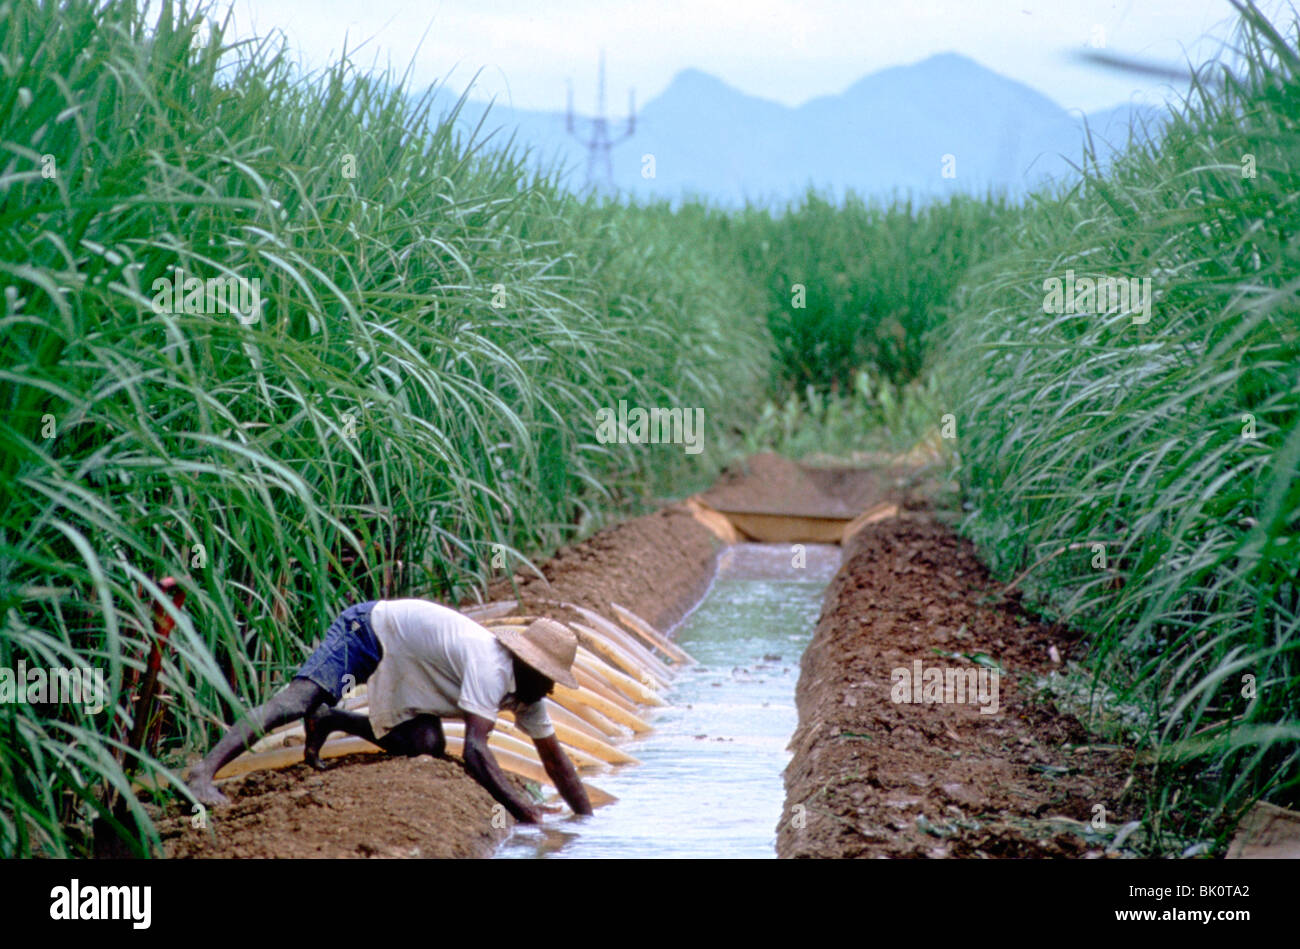 Plantation de canne à sucre, le Brésil. Banque D'Images